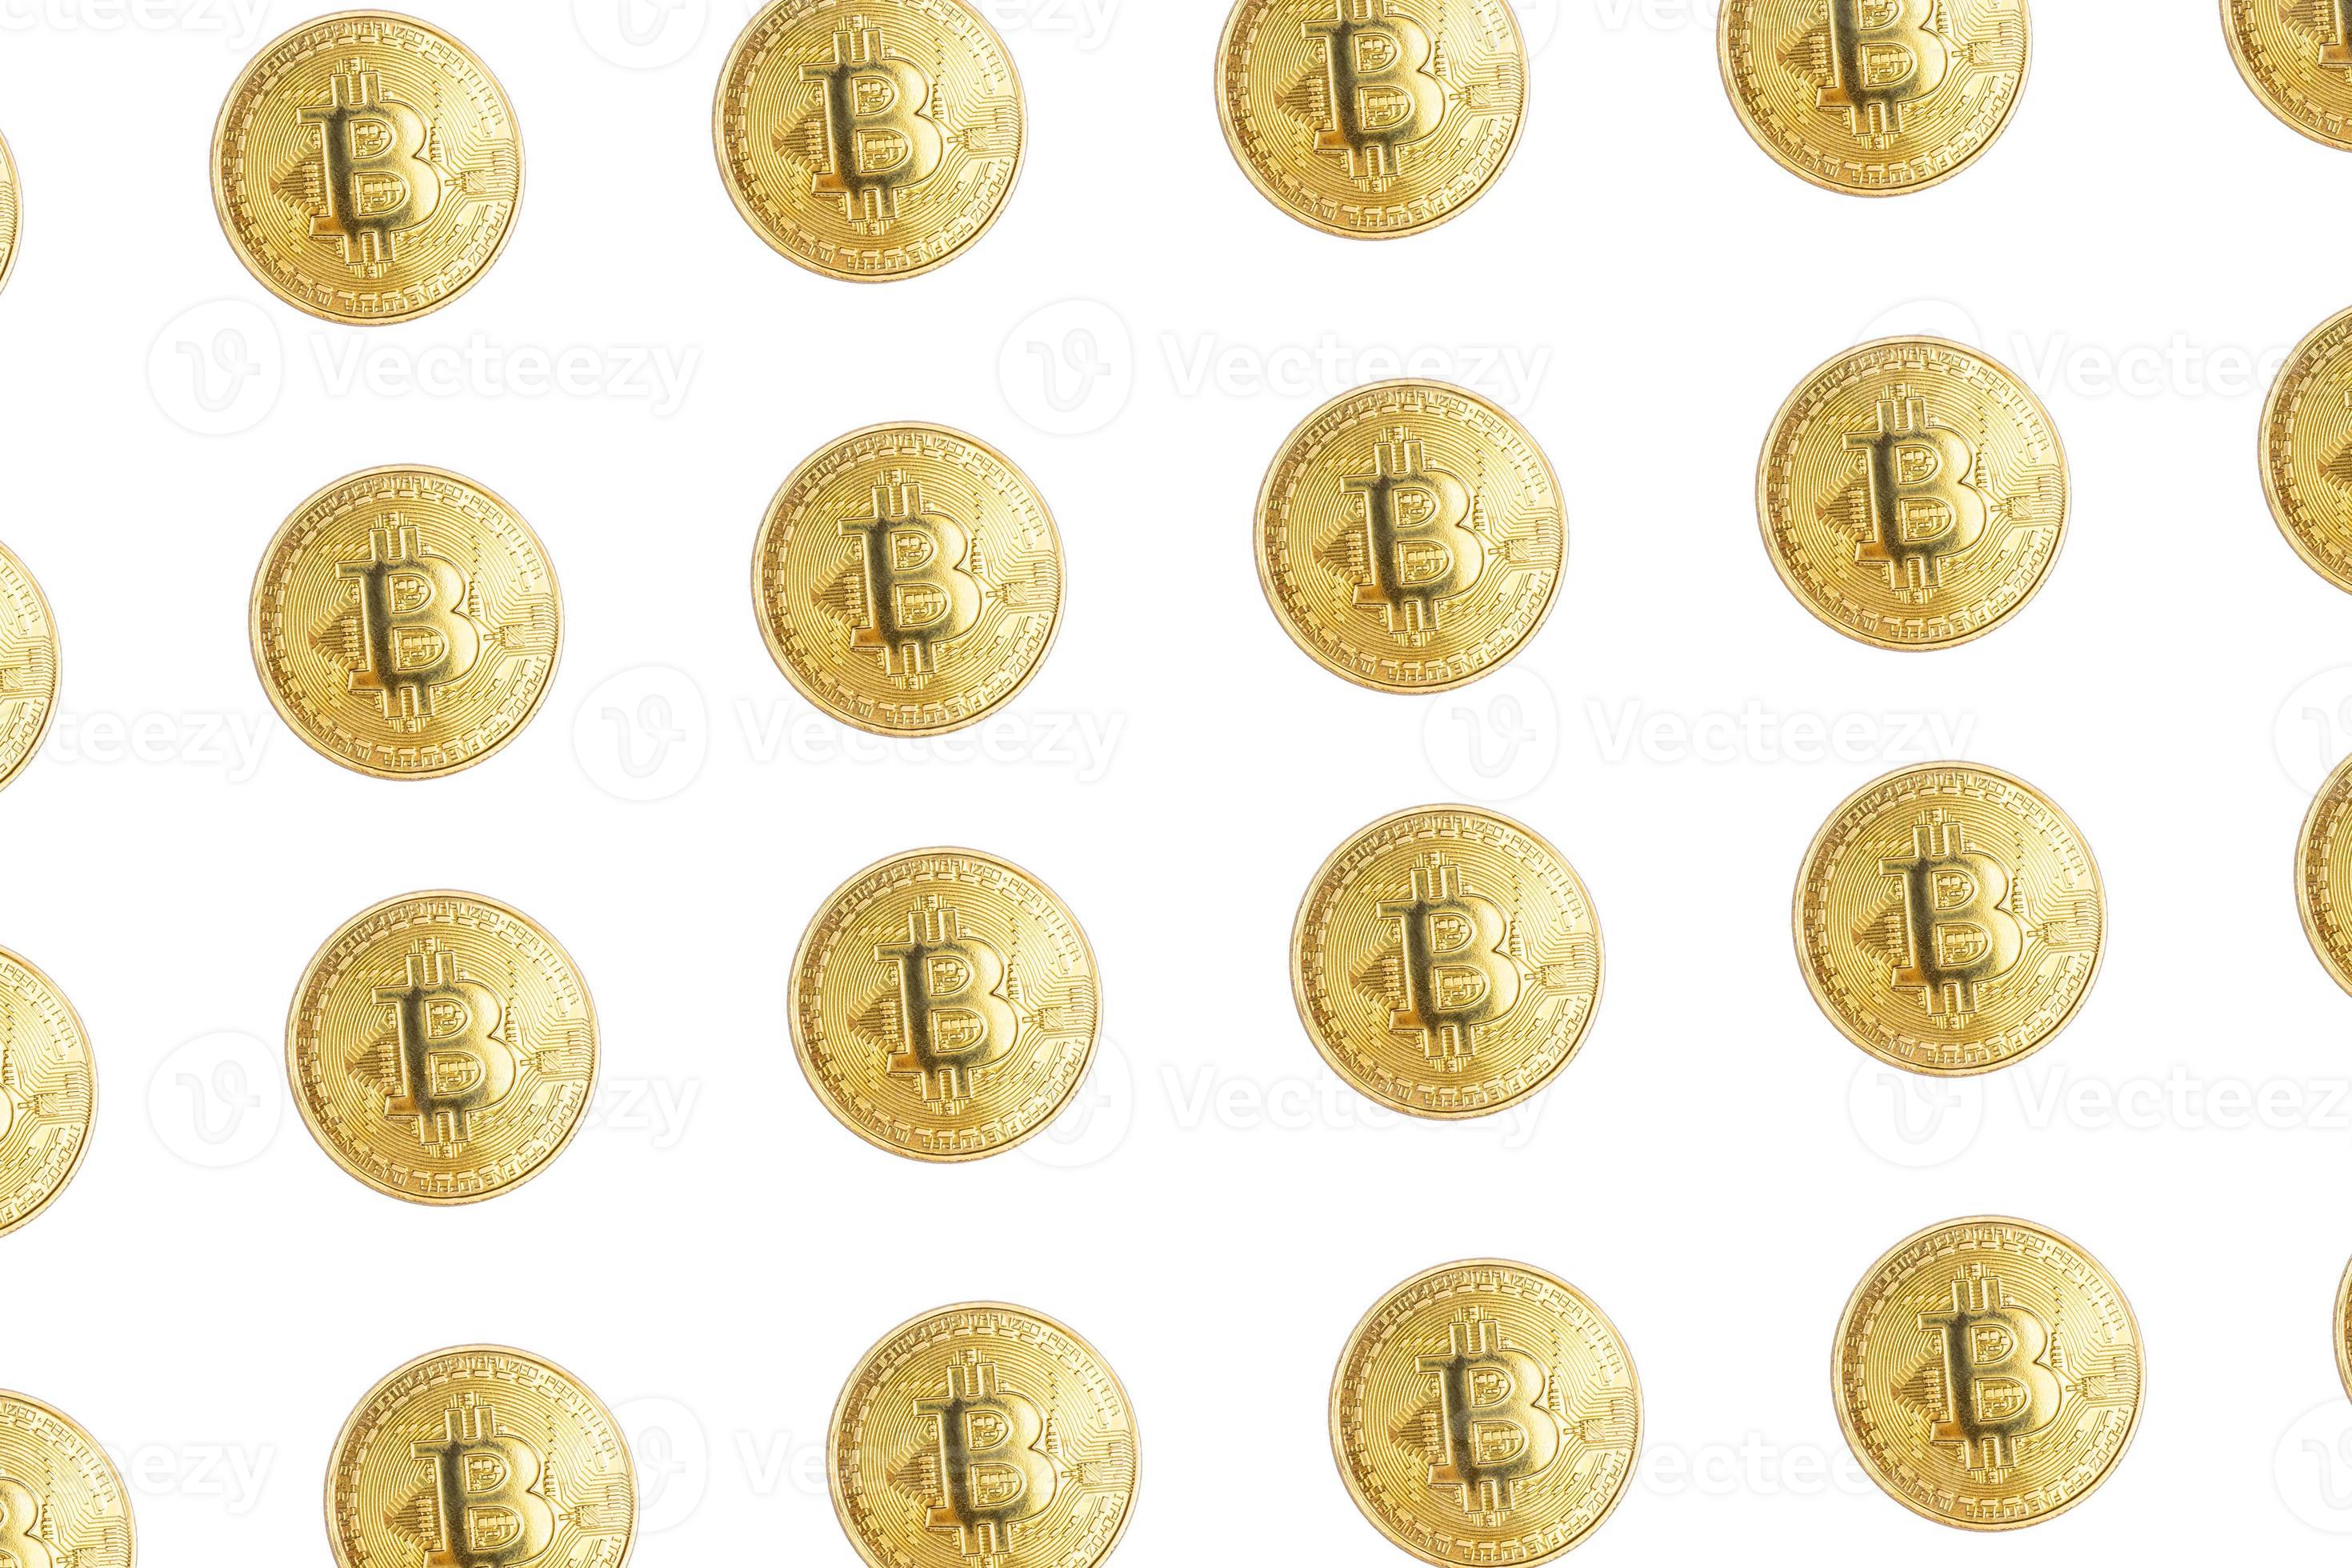 grupo de moedas de ouro de criptomoeda bitcoin isoladas no fundo branco foto